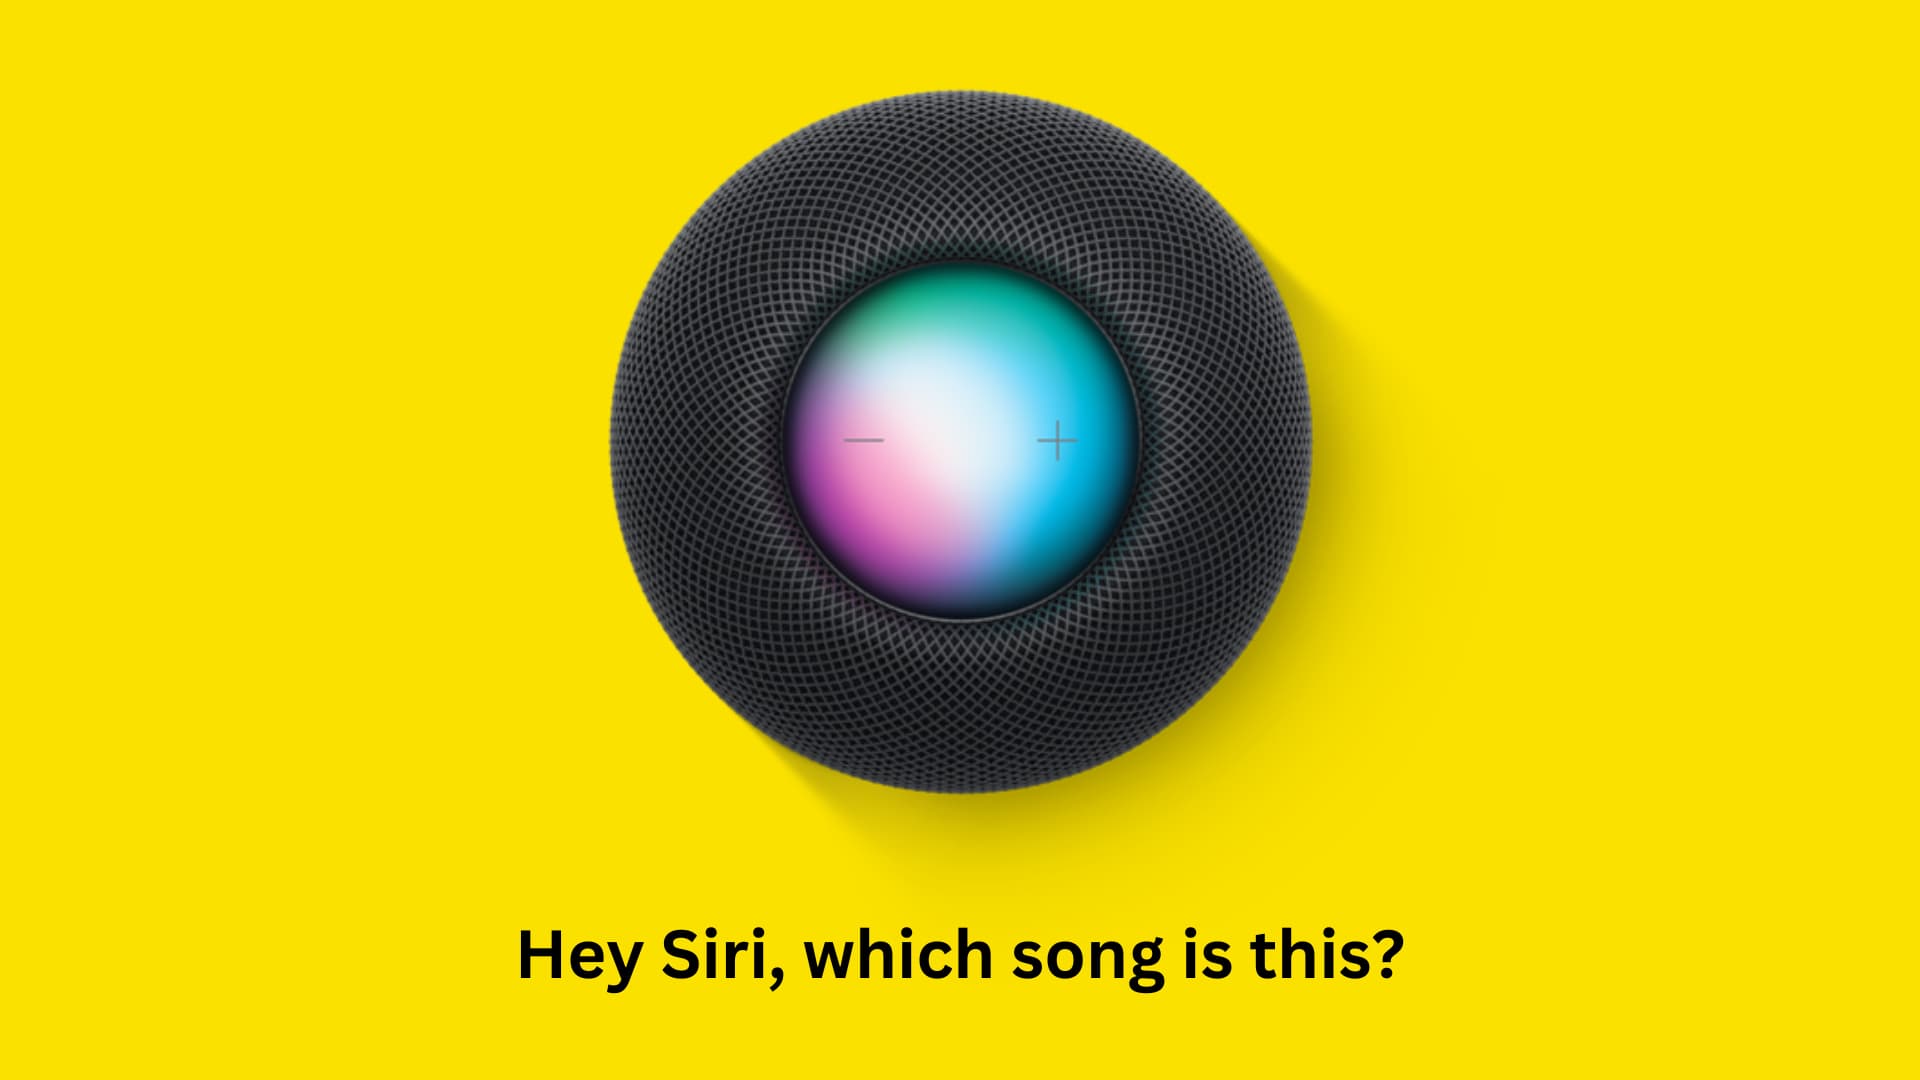 Tanya Siri di HomePod lagu apa yang sedang diputar